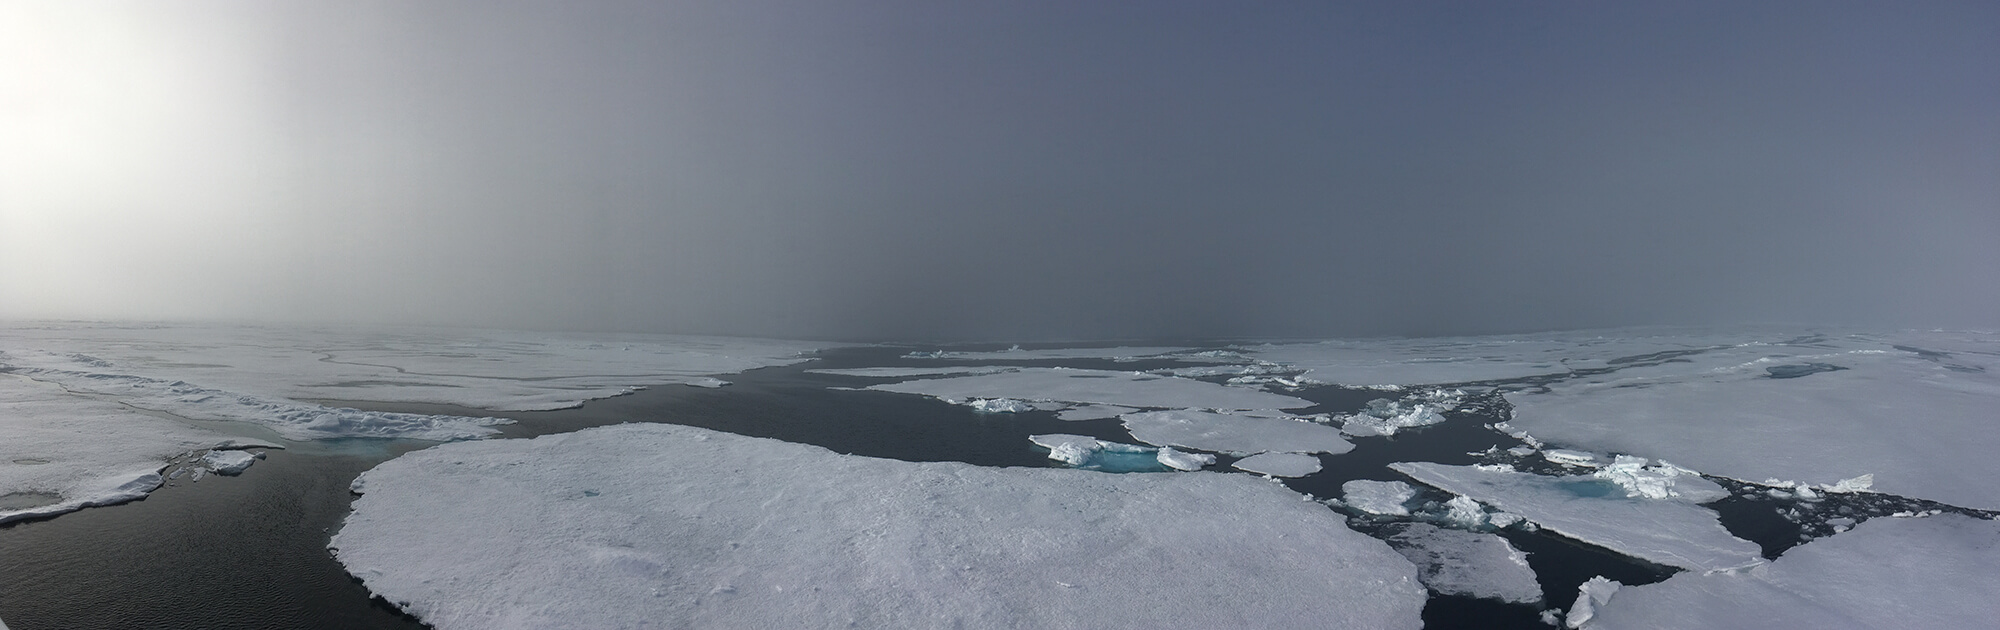 Arctic View